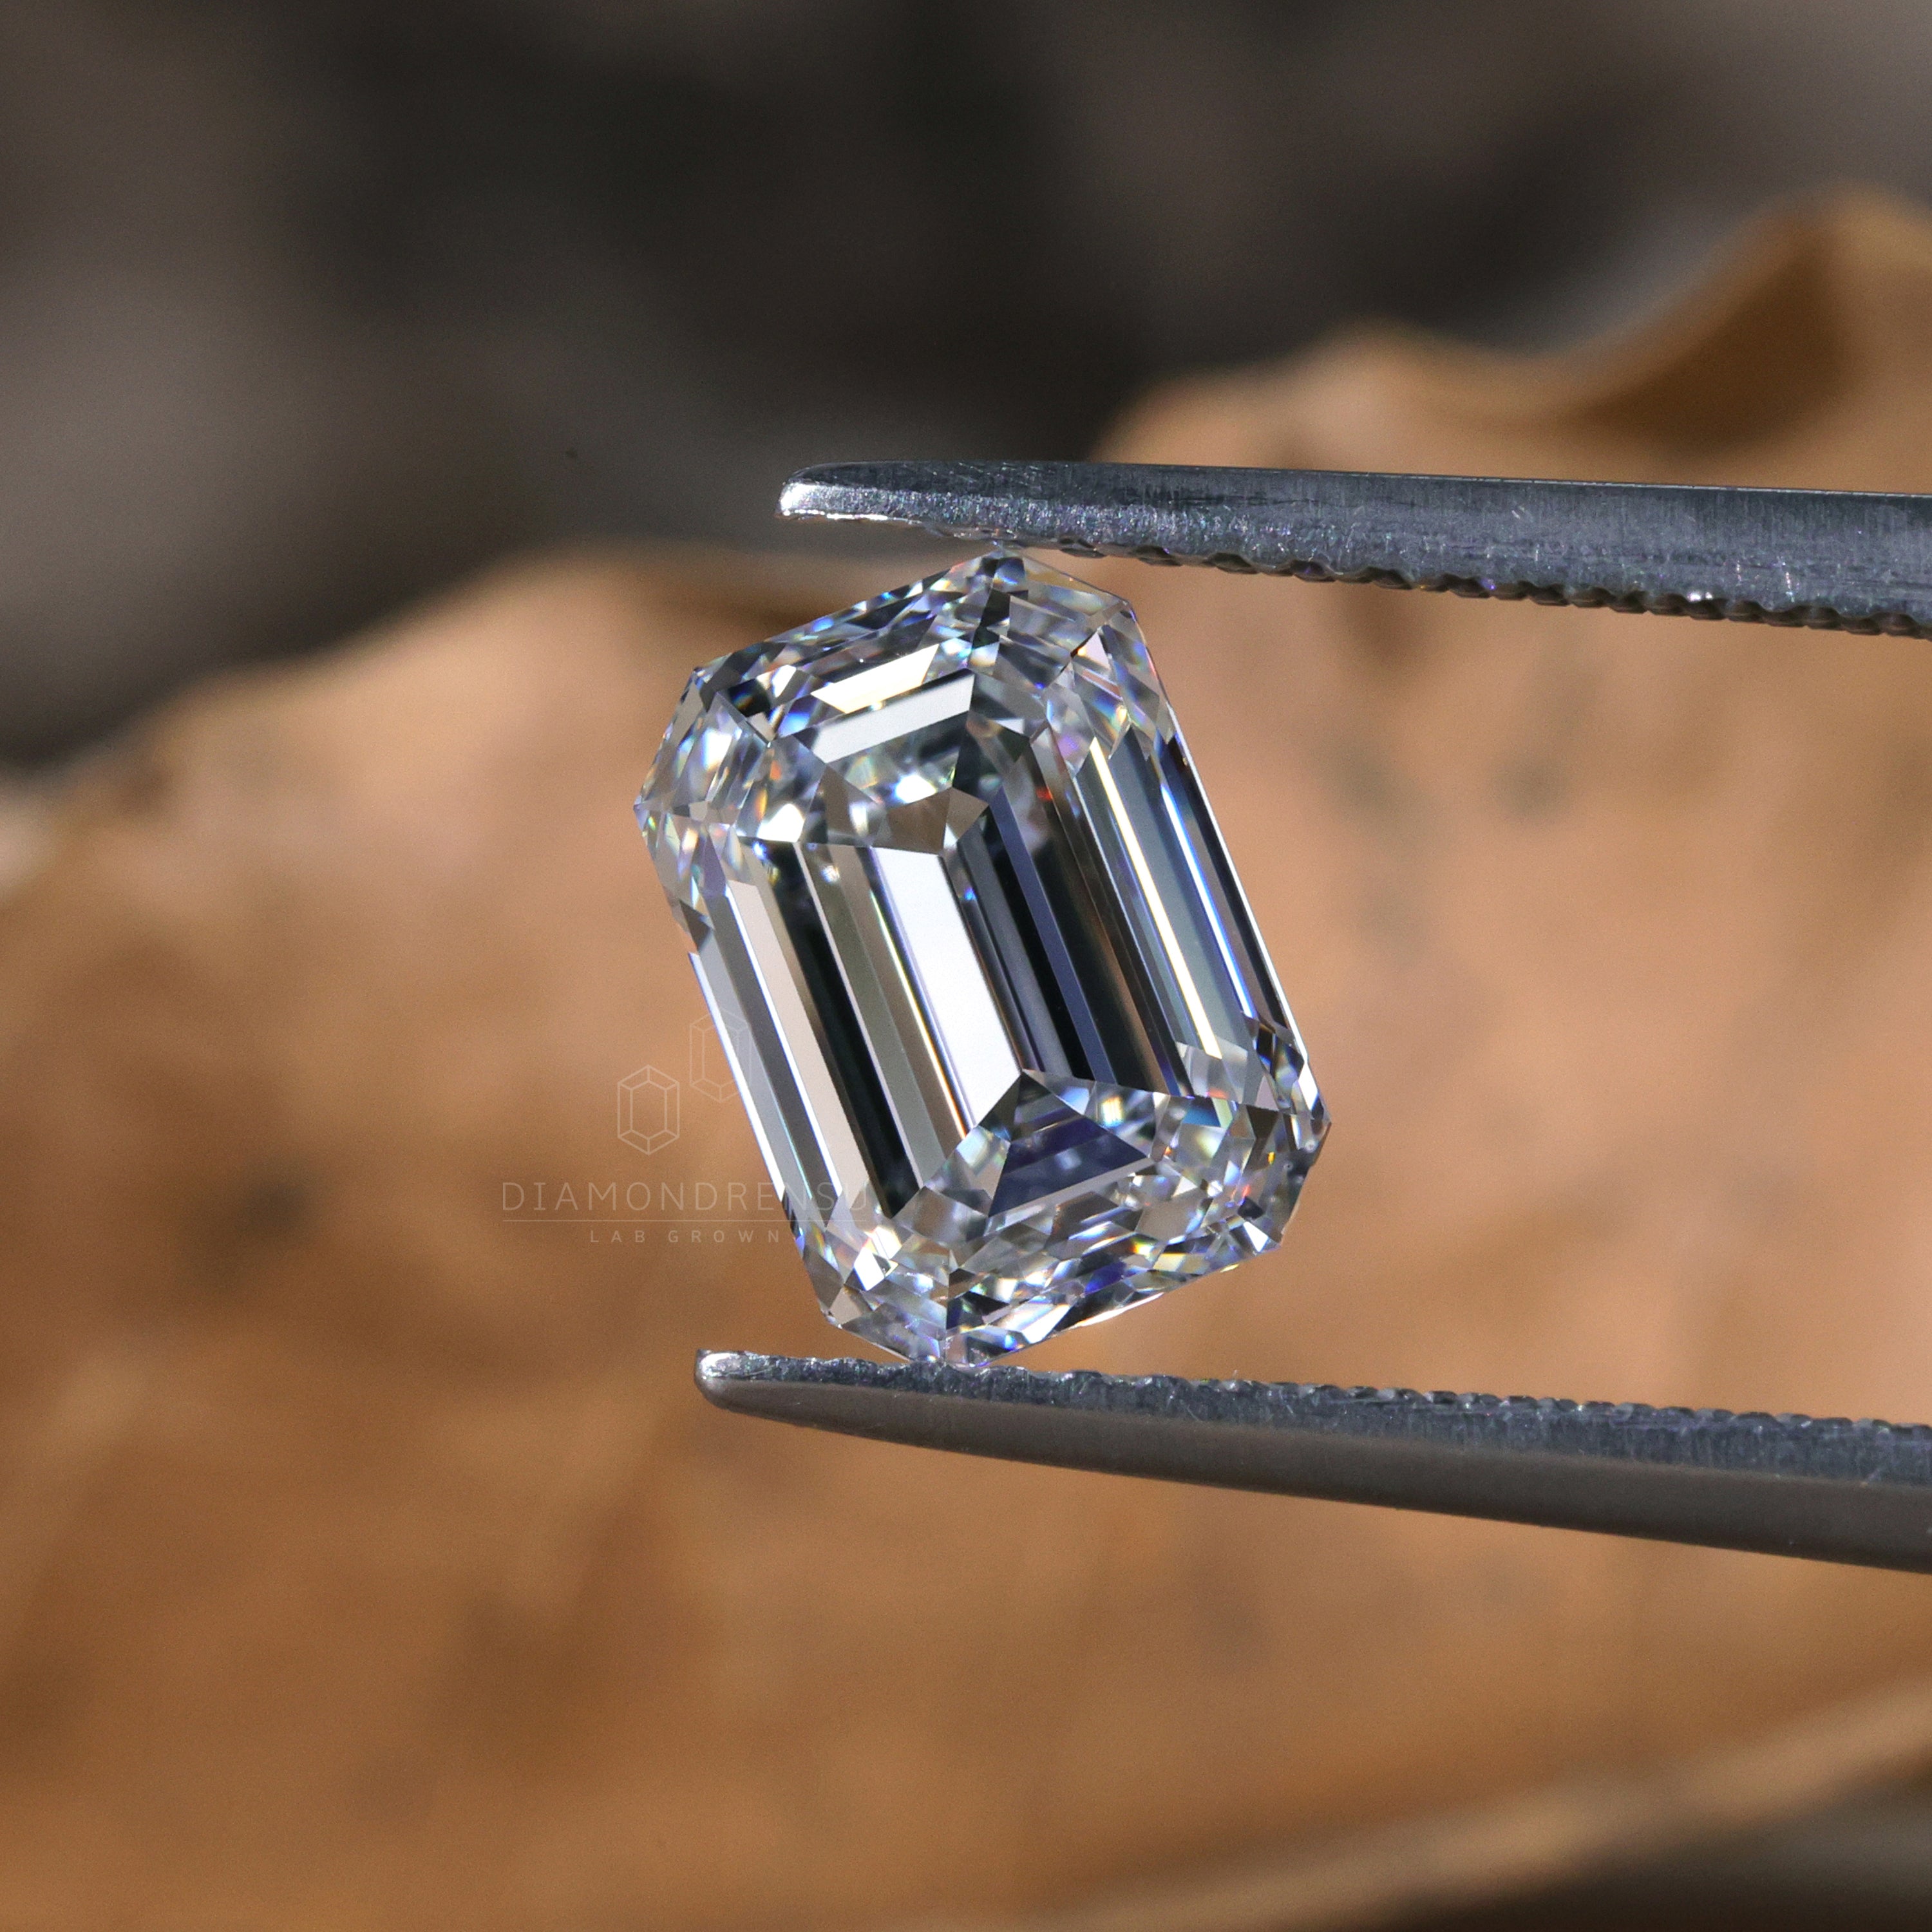 igi certified diamond - diamondrensu